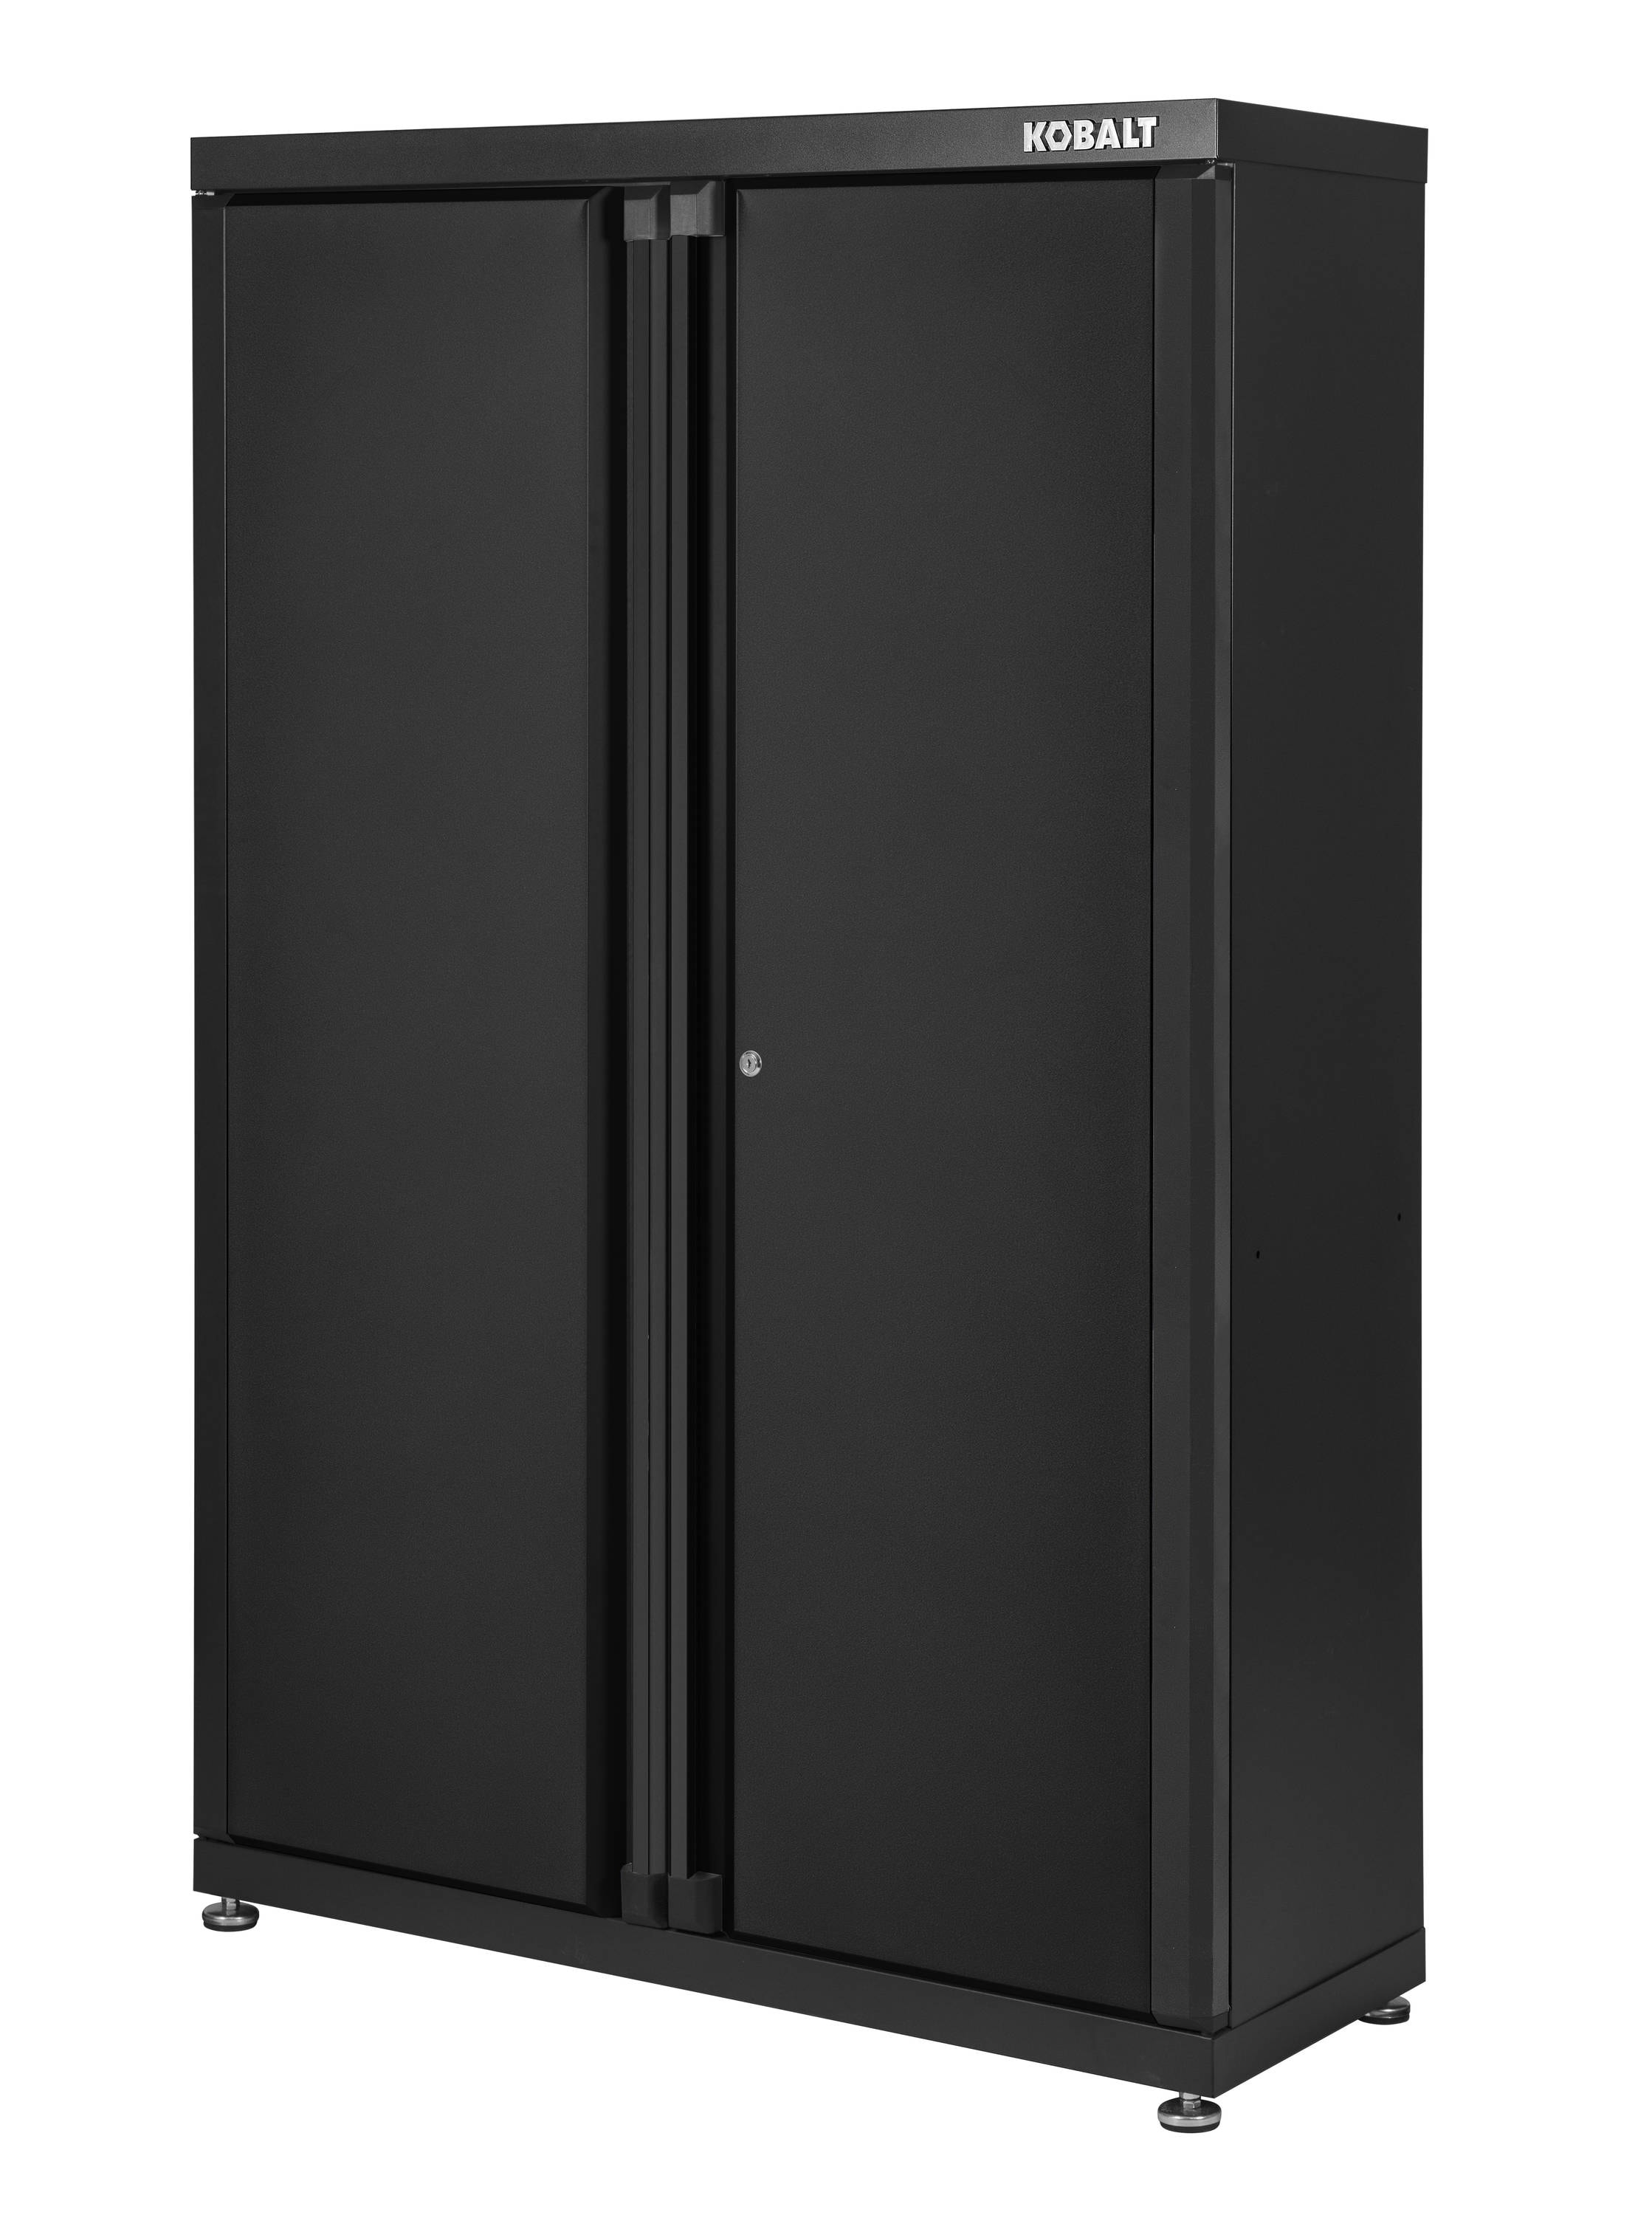 72-Bin Storage Cabinet Unit